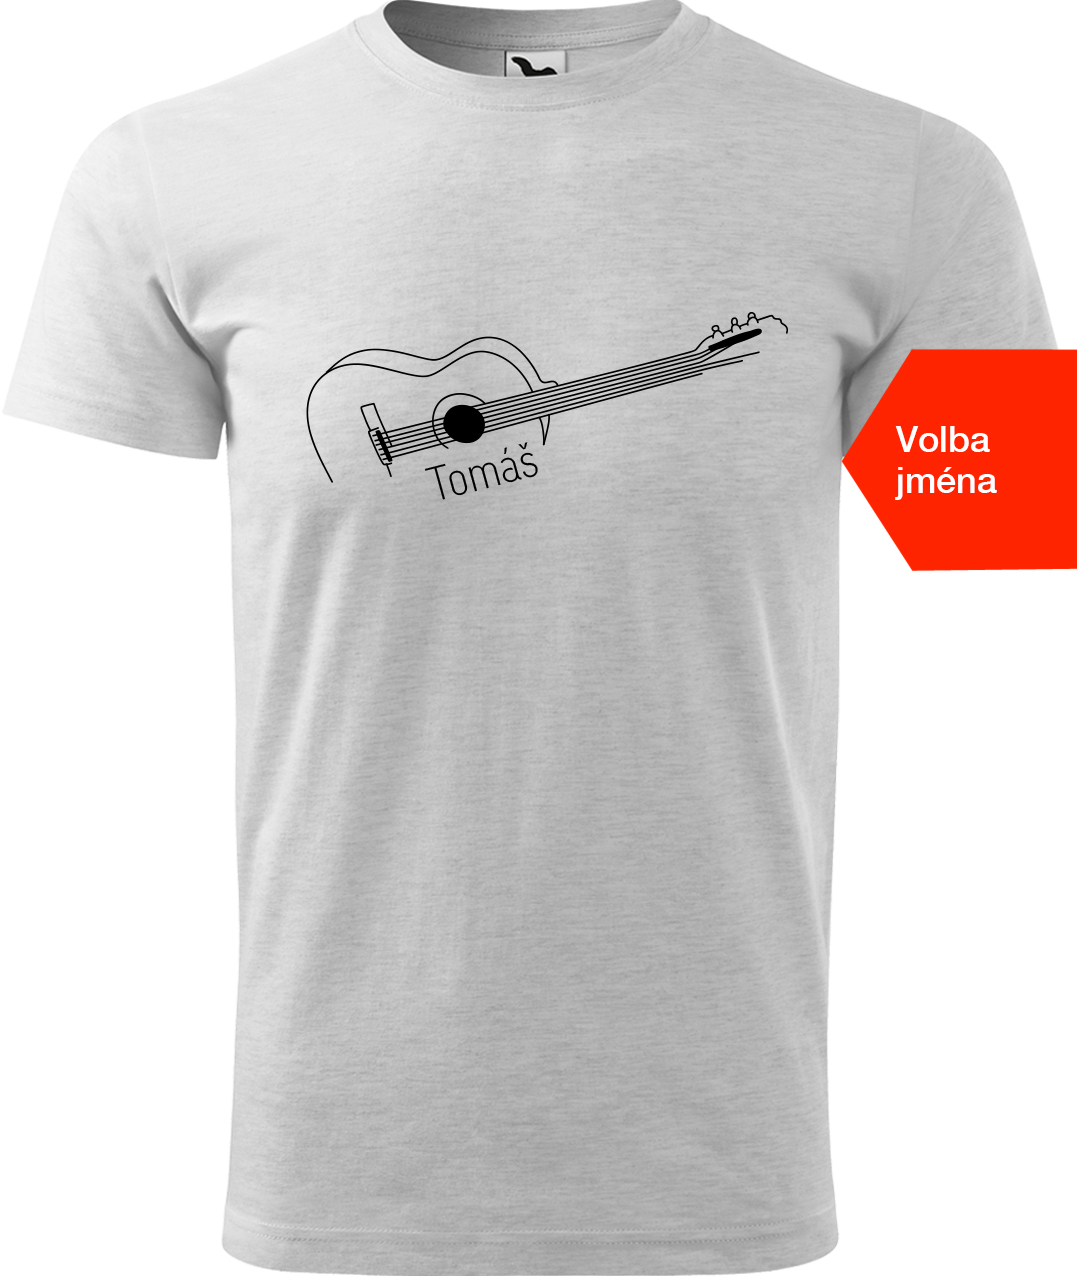 Pánské tričko s kytarou se jménem - Stylizovaná kytara Velikost: L, Barva: Světle šedý melír (03), Střih: pánský